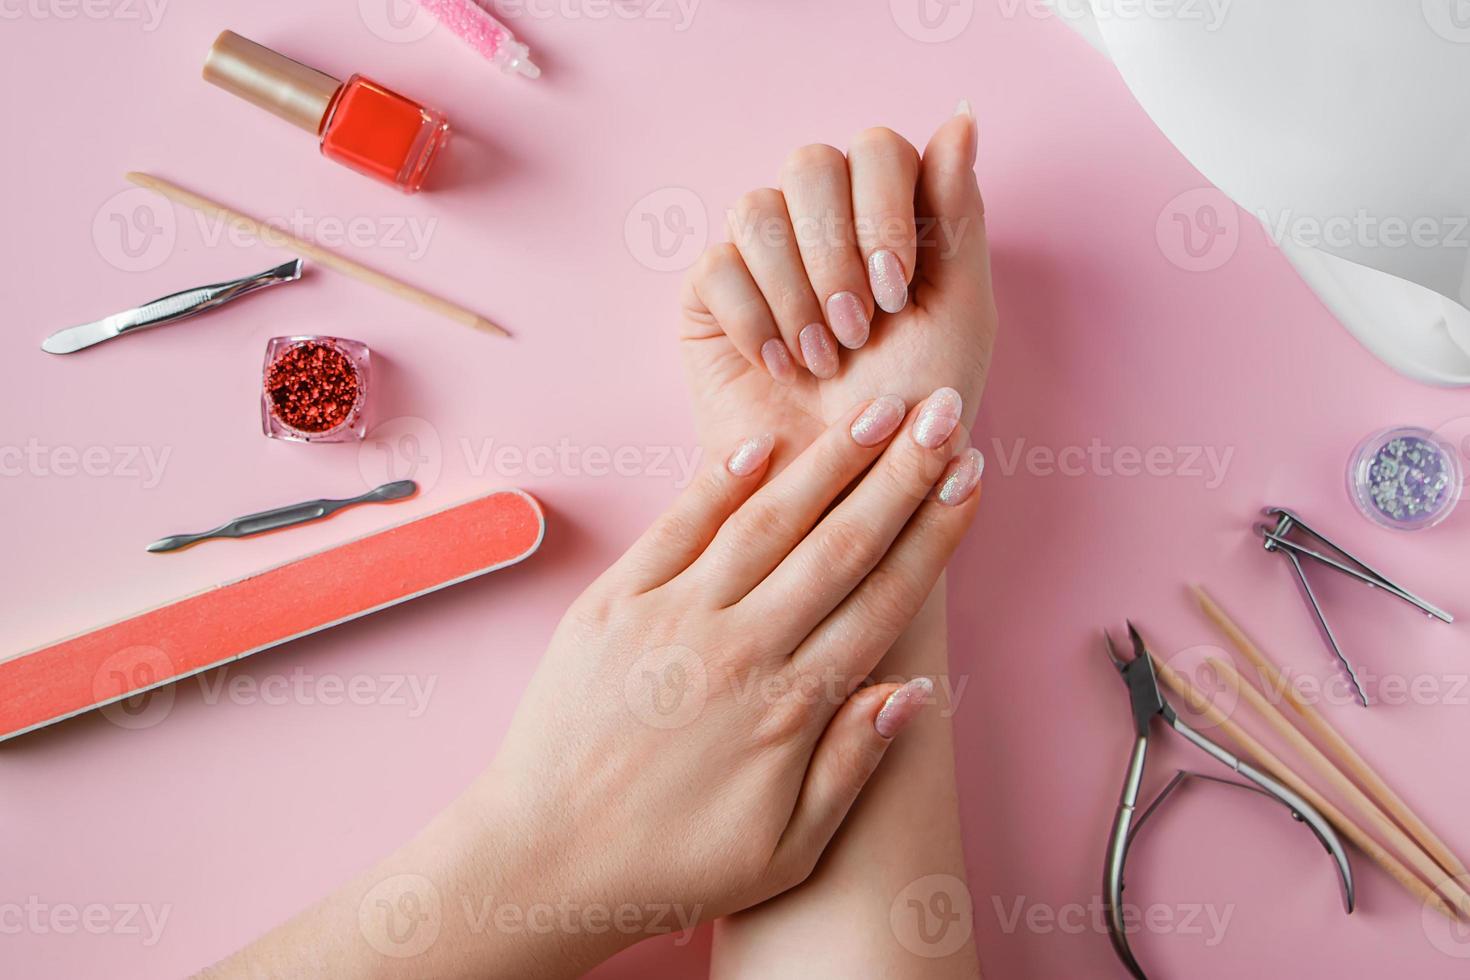 procedimento de cuidado das unhas em um salão de beleza. mãos femininas e ferramentas para manicure em fundo rosa. conceito spa bodycare. foto